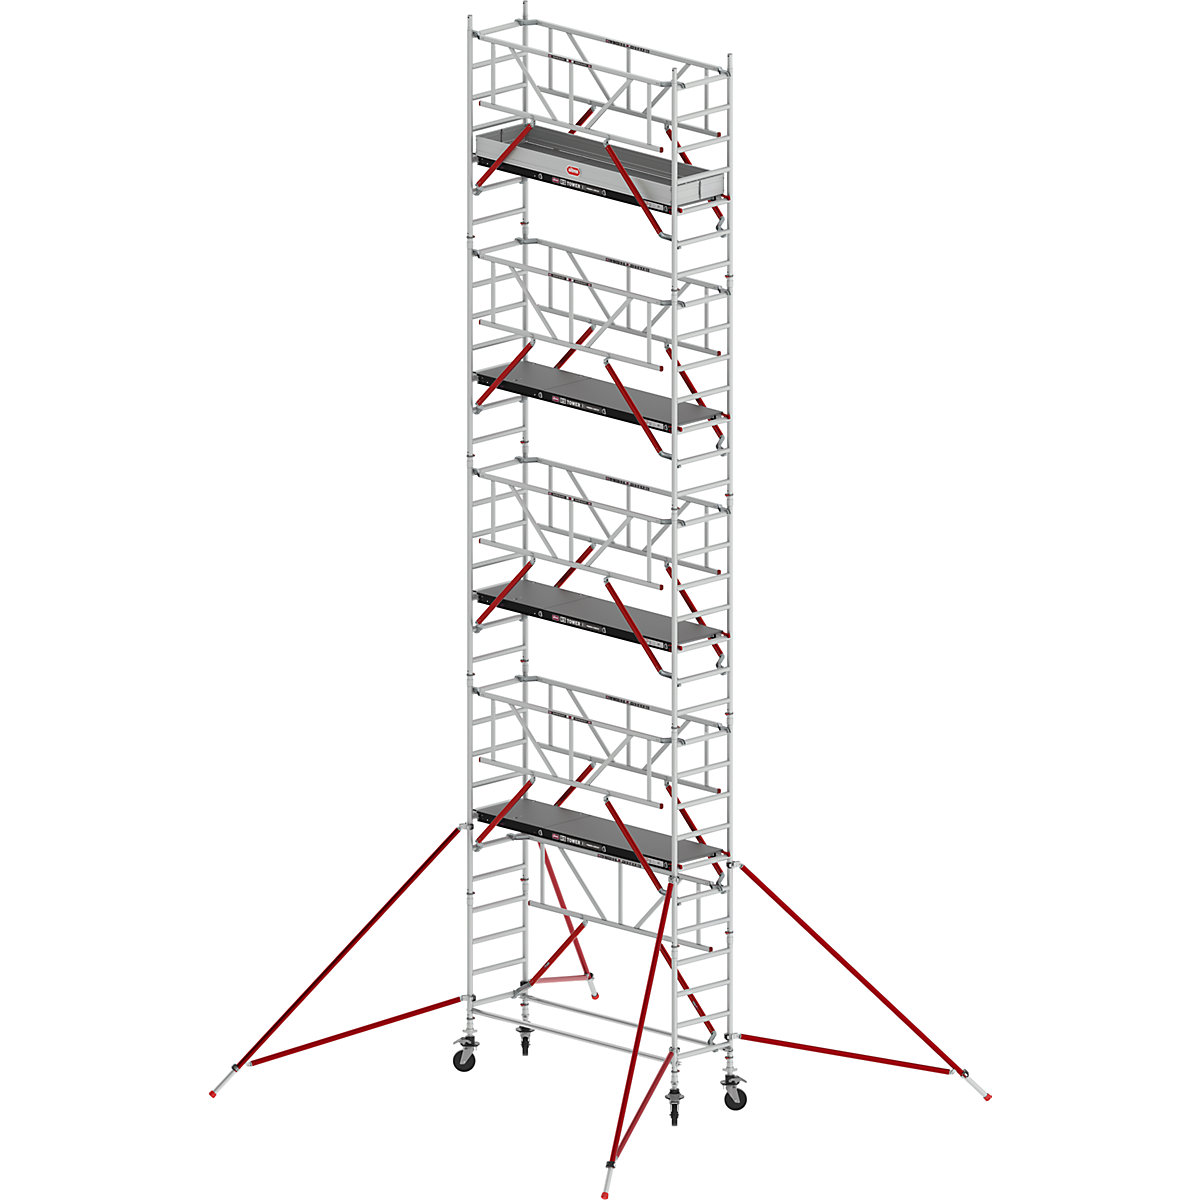 Andaime móvel estreito RS TOWER 51 – Altrex, com plataforma de madeira, comprimento 2,45 m, altura de trabalho 10,20 m-5